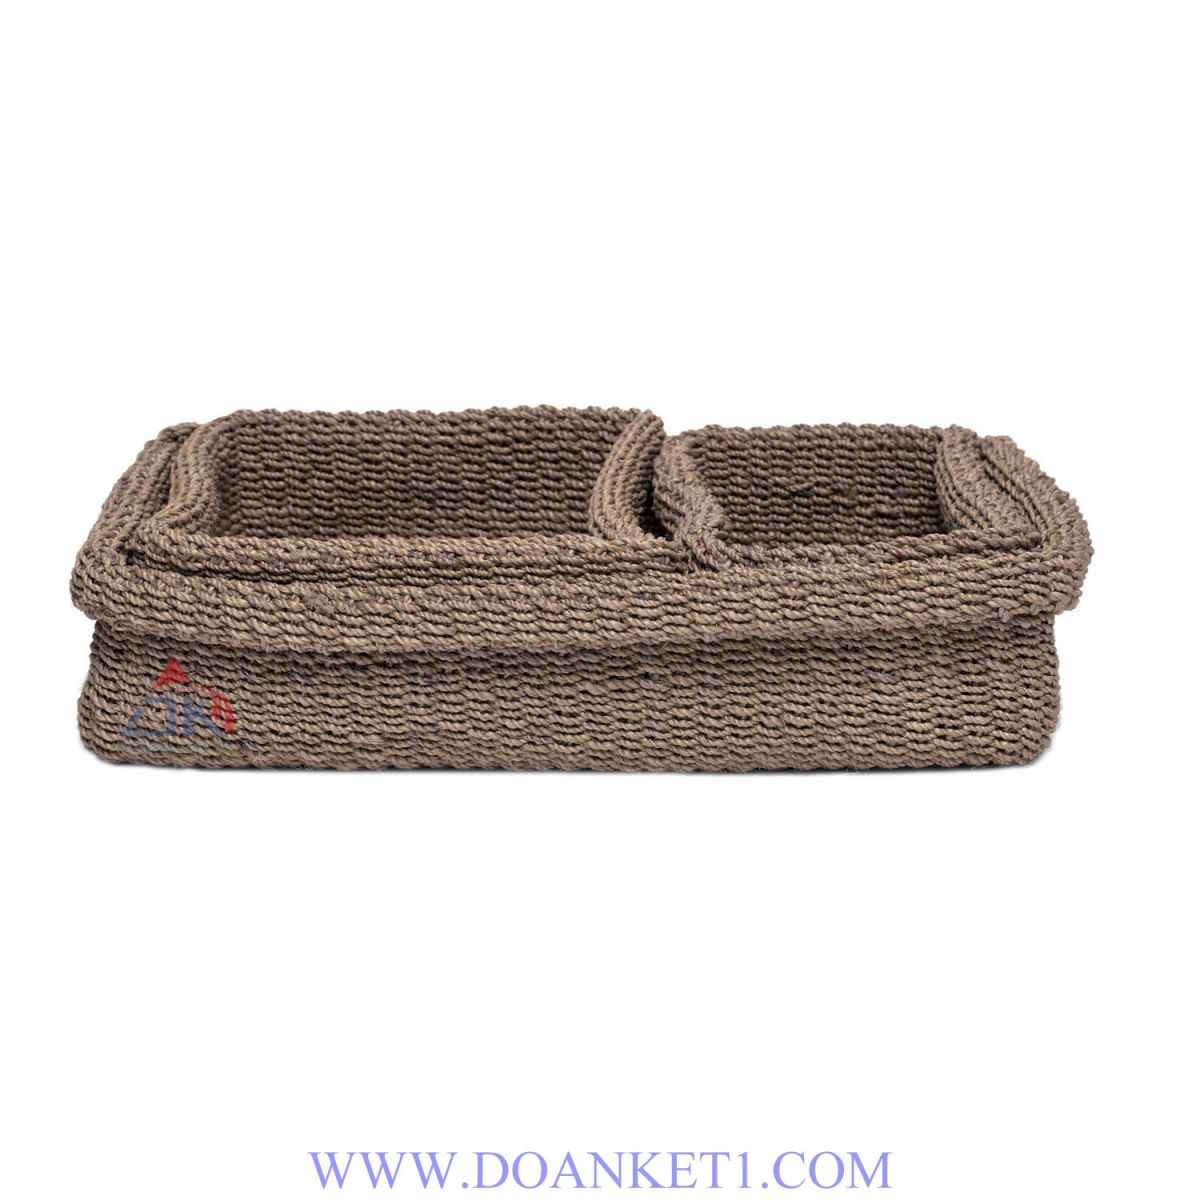 Textile Basket S/3 # DK170